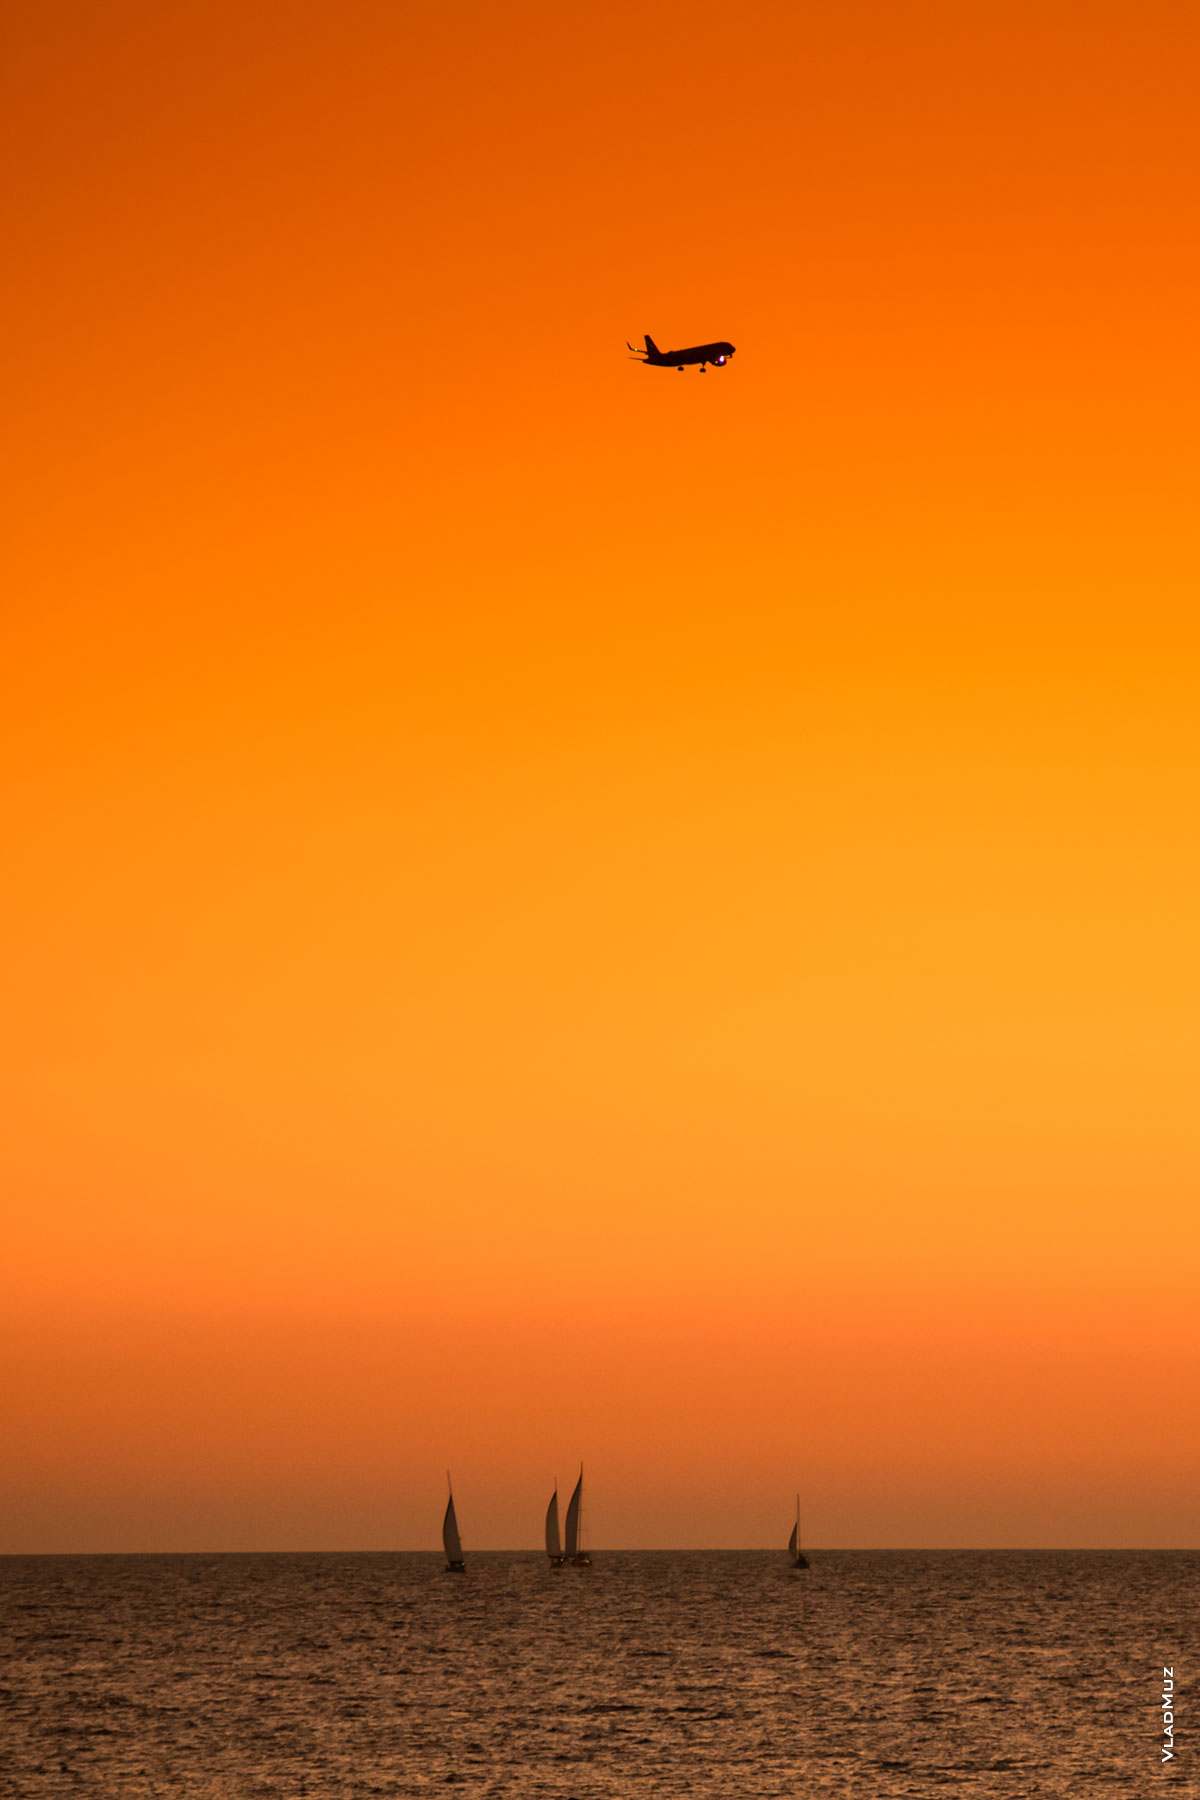 Фото яхт в море и самолета в небе Сочи после заката солнца. Морской фотопейзаж